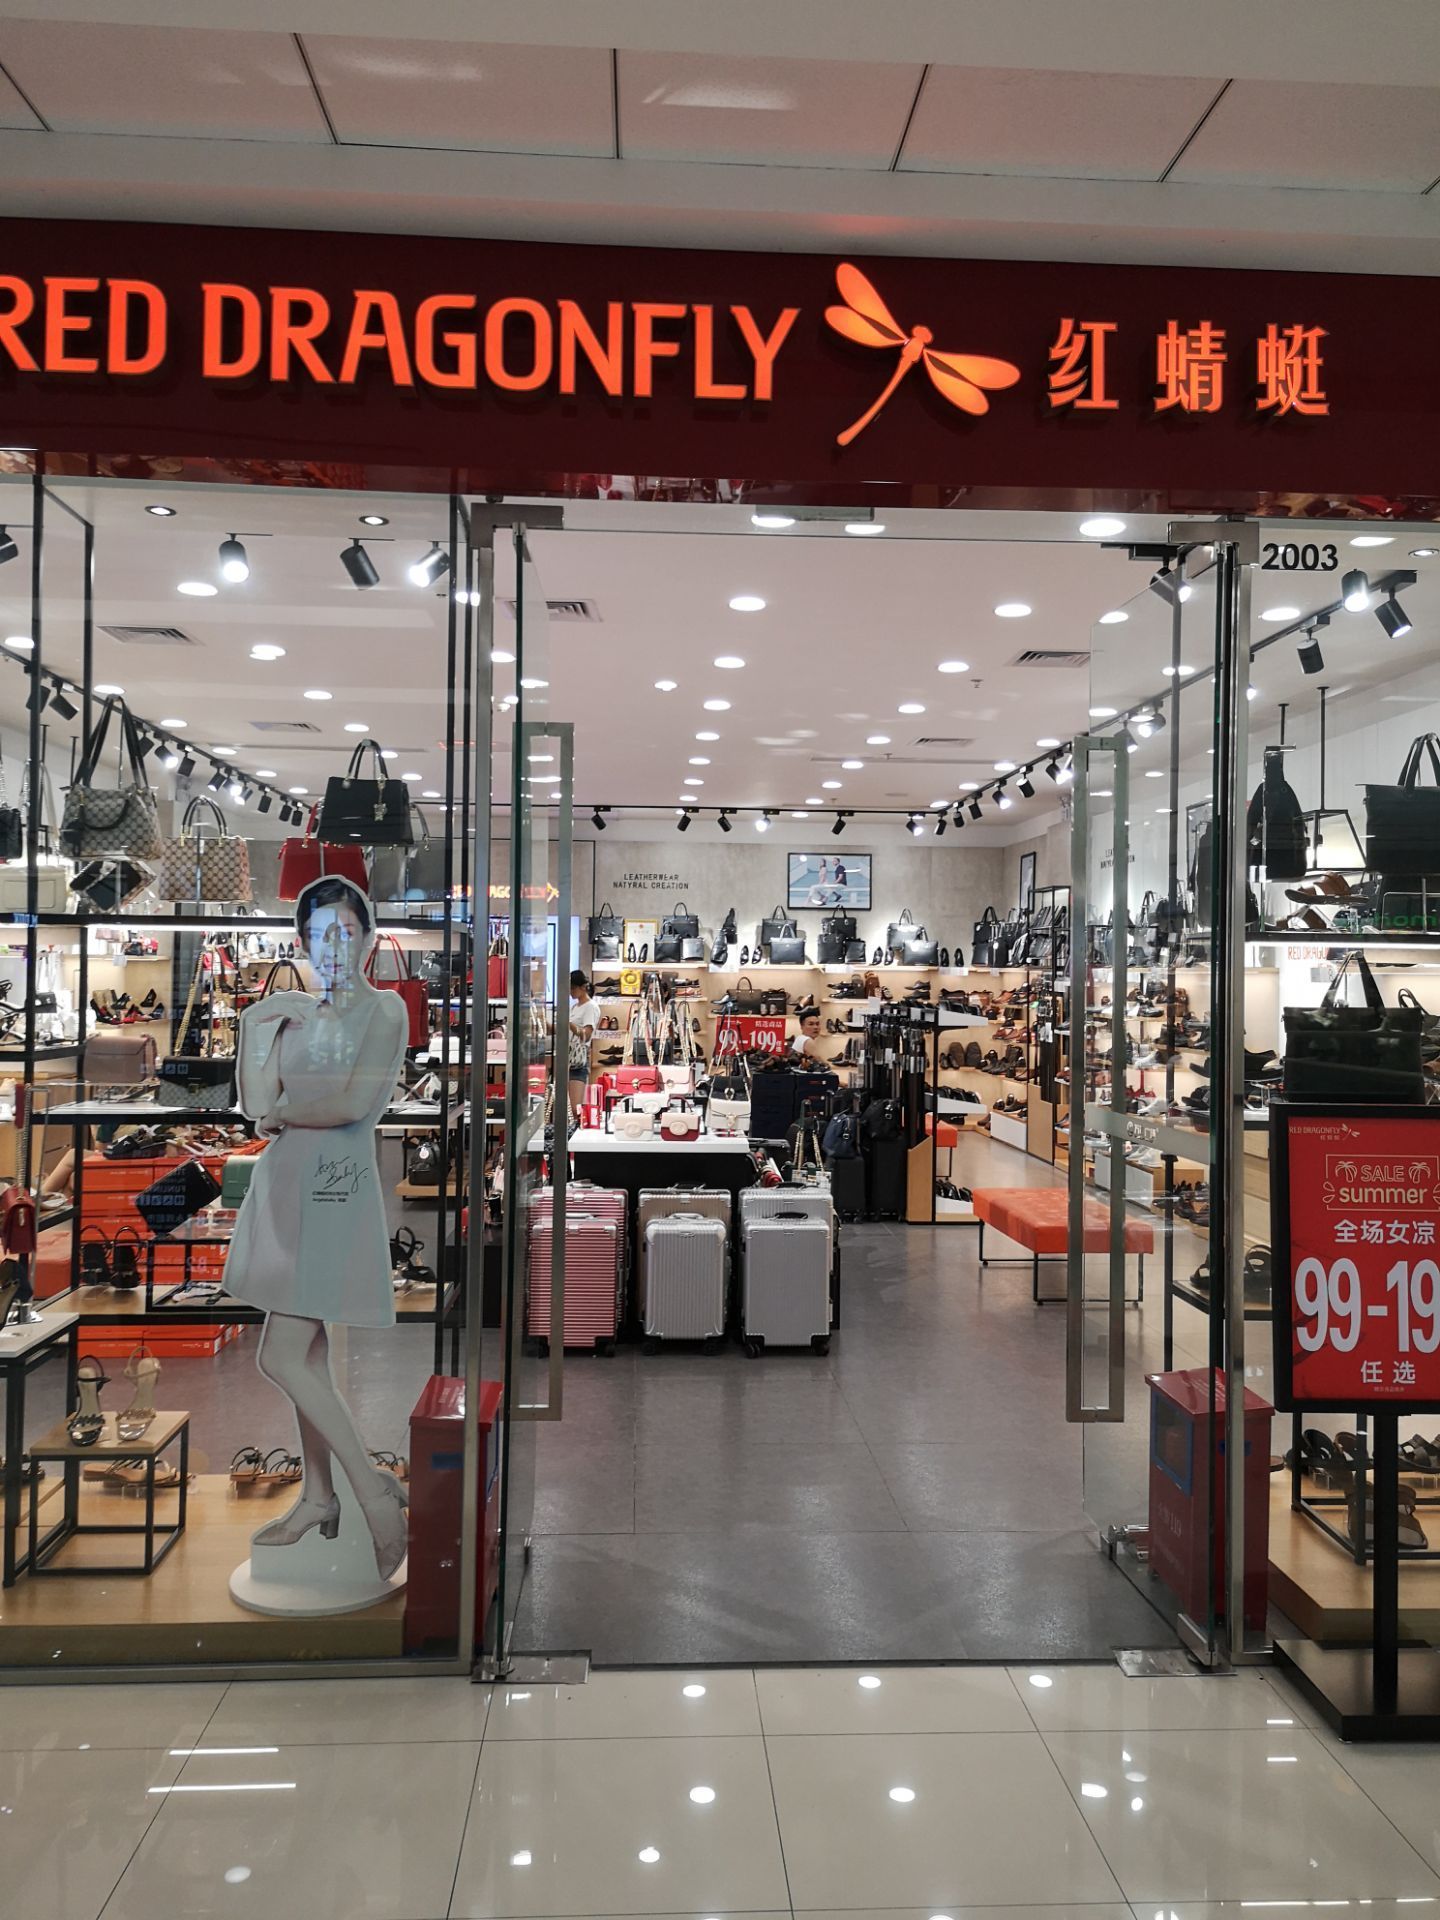 上海红蜻蜓皮鞋专卖店图片